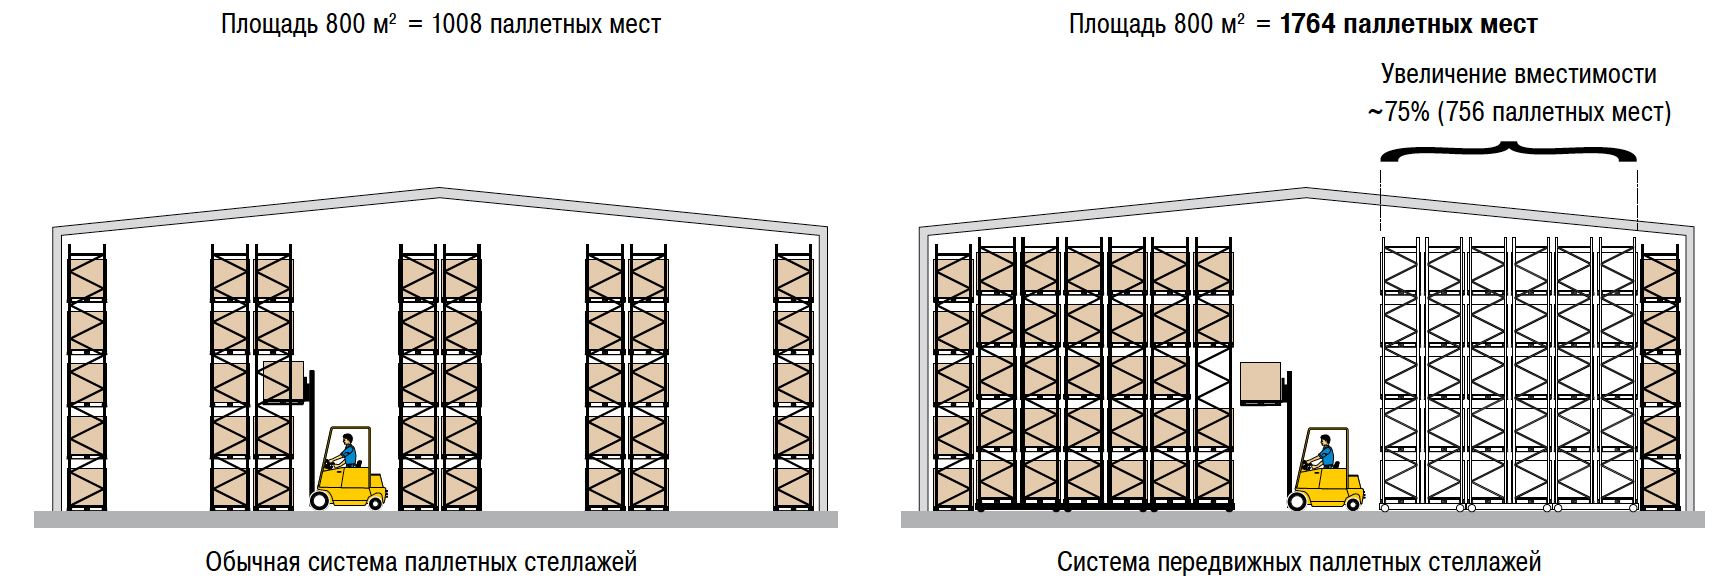 Расстановки стеллажей. Складской стеллажный комплекс (система r 4000). Схема расстановки паллетных стеллажей. Схема расстановки складских стеллажей. Стеллаж паллетный (Размеры (ВXШXГ) В мм: 3000x6675x1100).